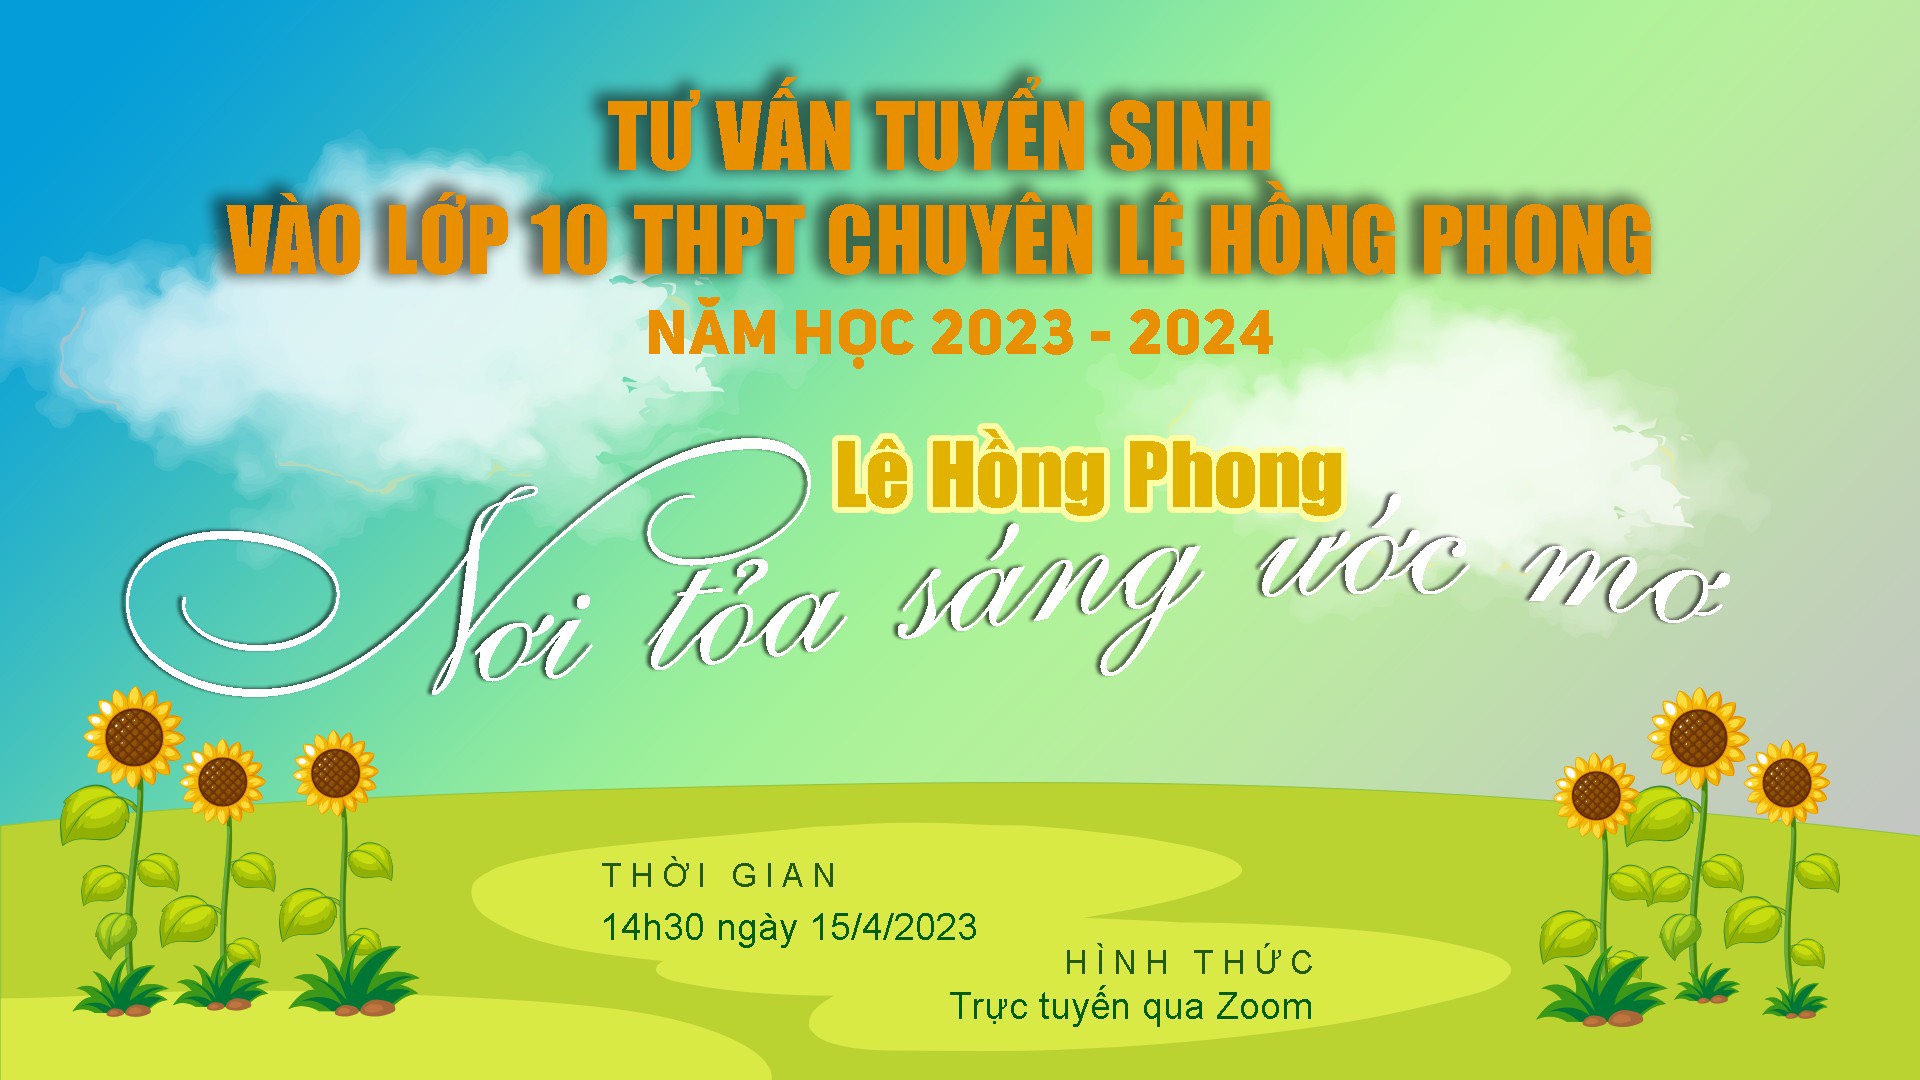 Trường THPT chuyên Lê Hồng Phong tổ chức tư vấn tuyển sinh vào lớp 10 với chủ đề “Lê Hồng Phong - Nơi tỏa sáng ước mơ”